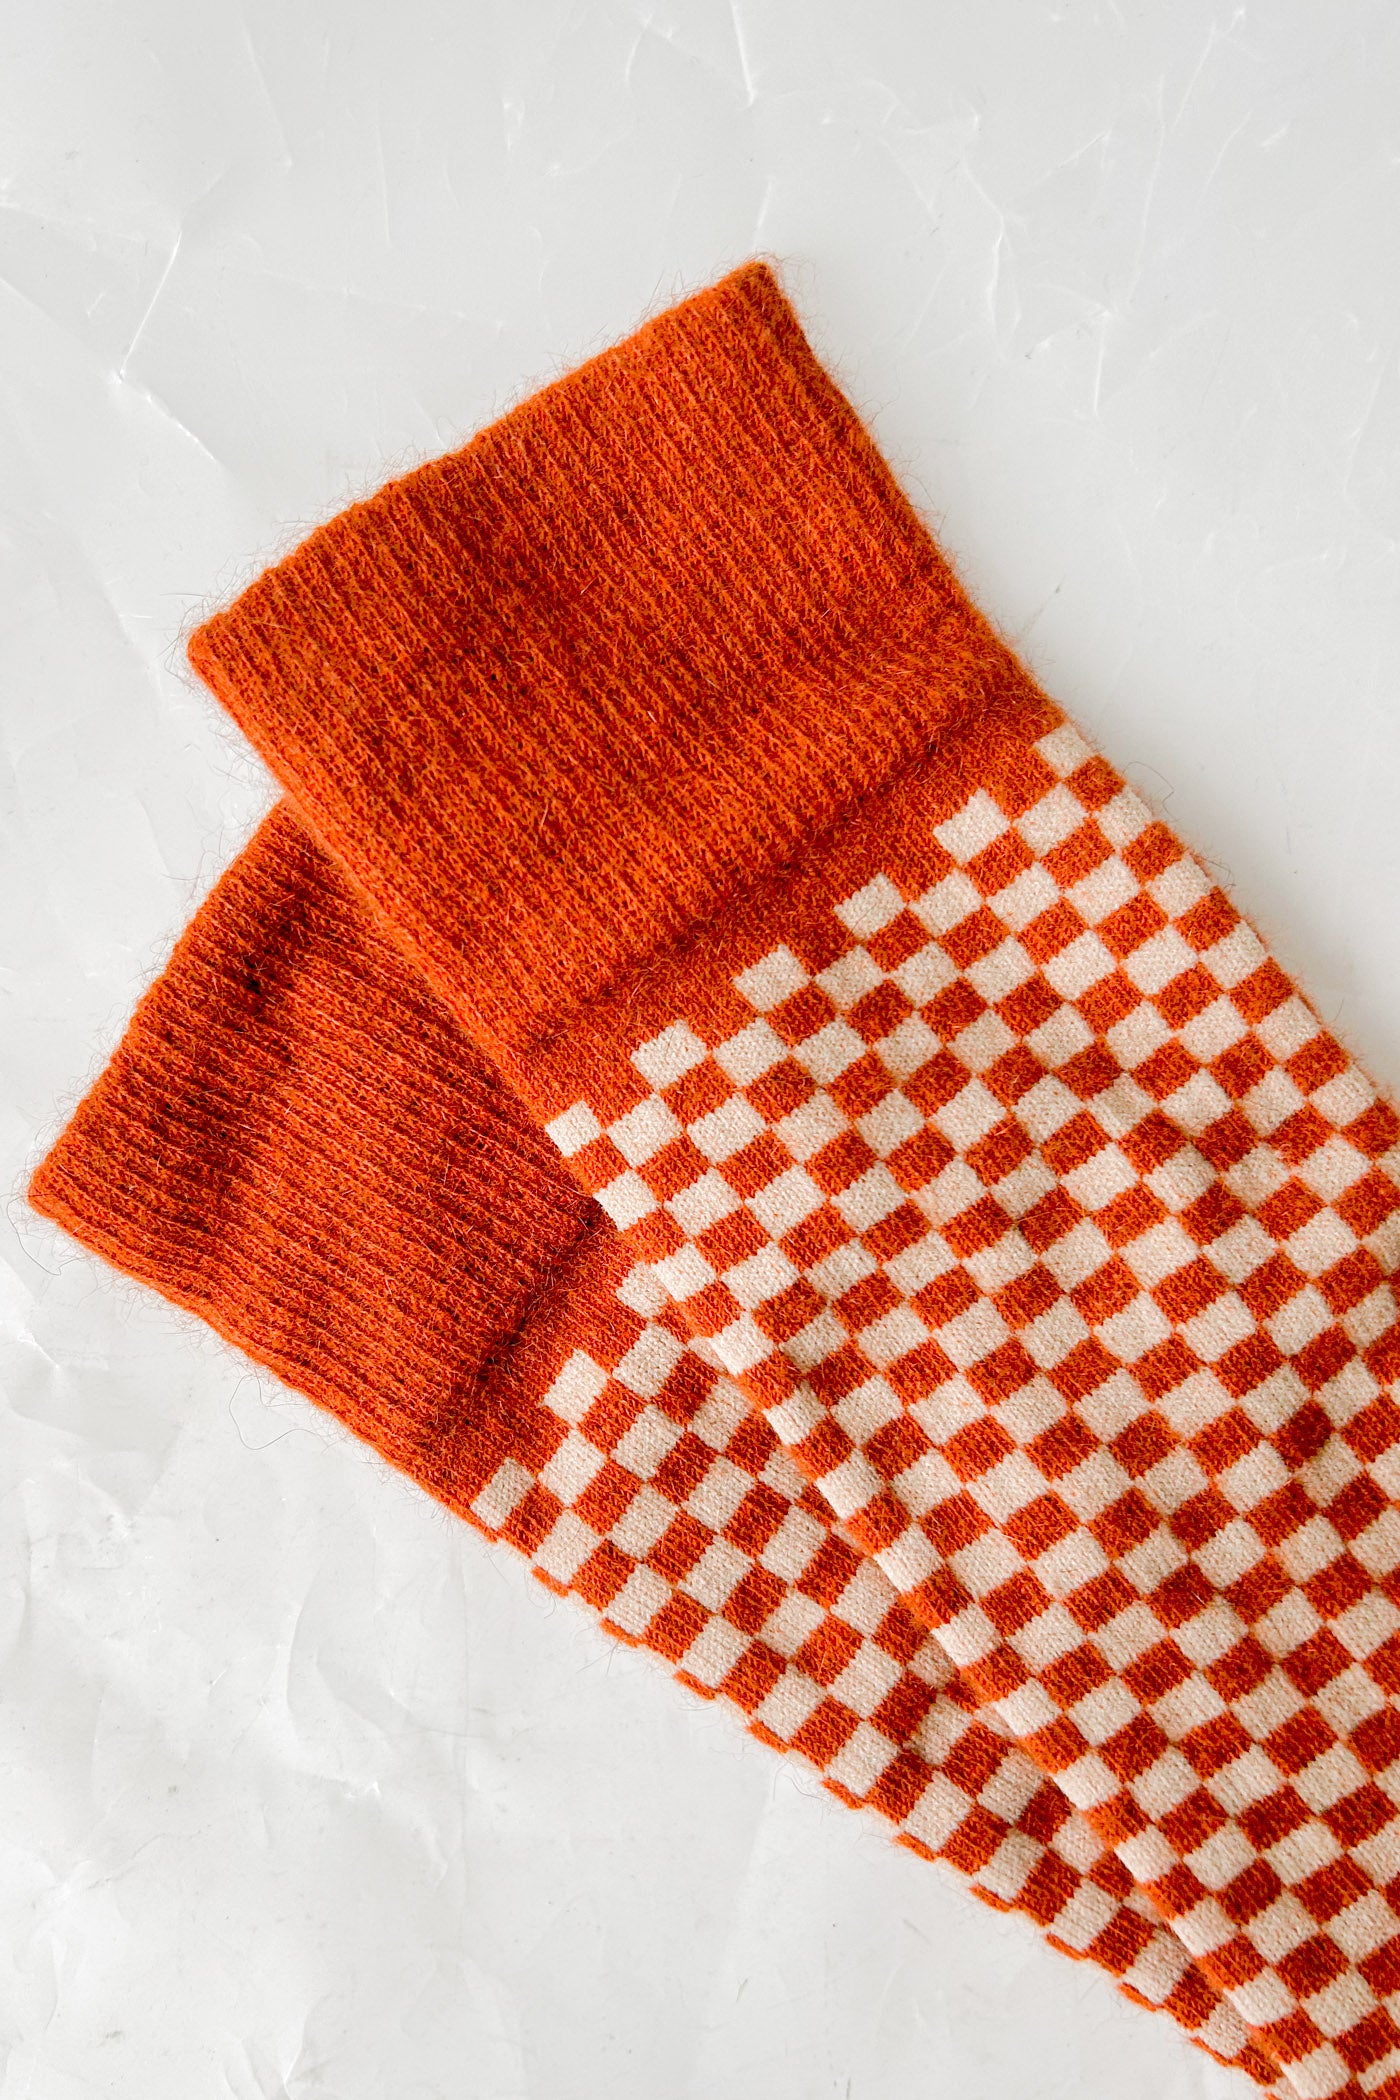 Possum and Merino Chess Socks - Spiced Orange — Crushes